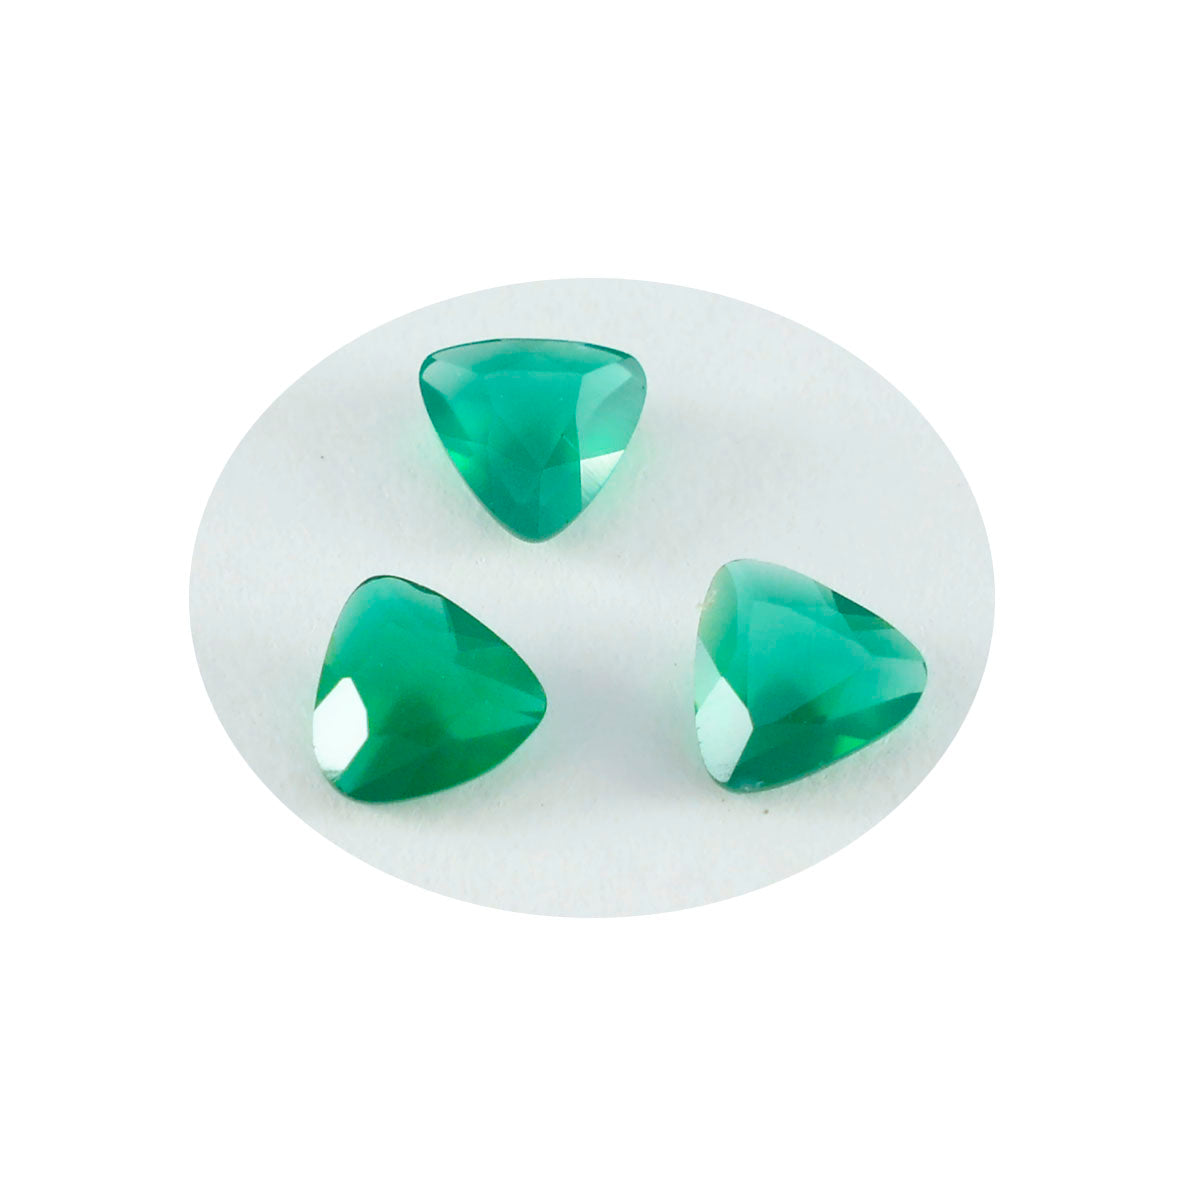 riyogems 1 шт. натуральный зеленый оникс ограненный 9x9 мм форма триллиона сладкий качественный камень